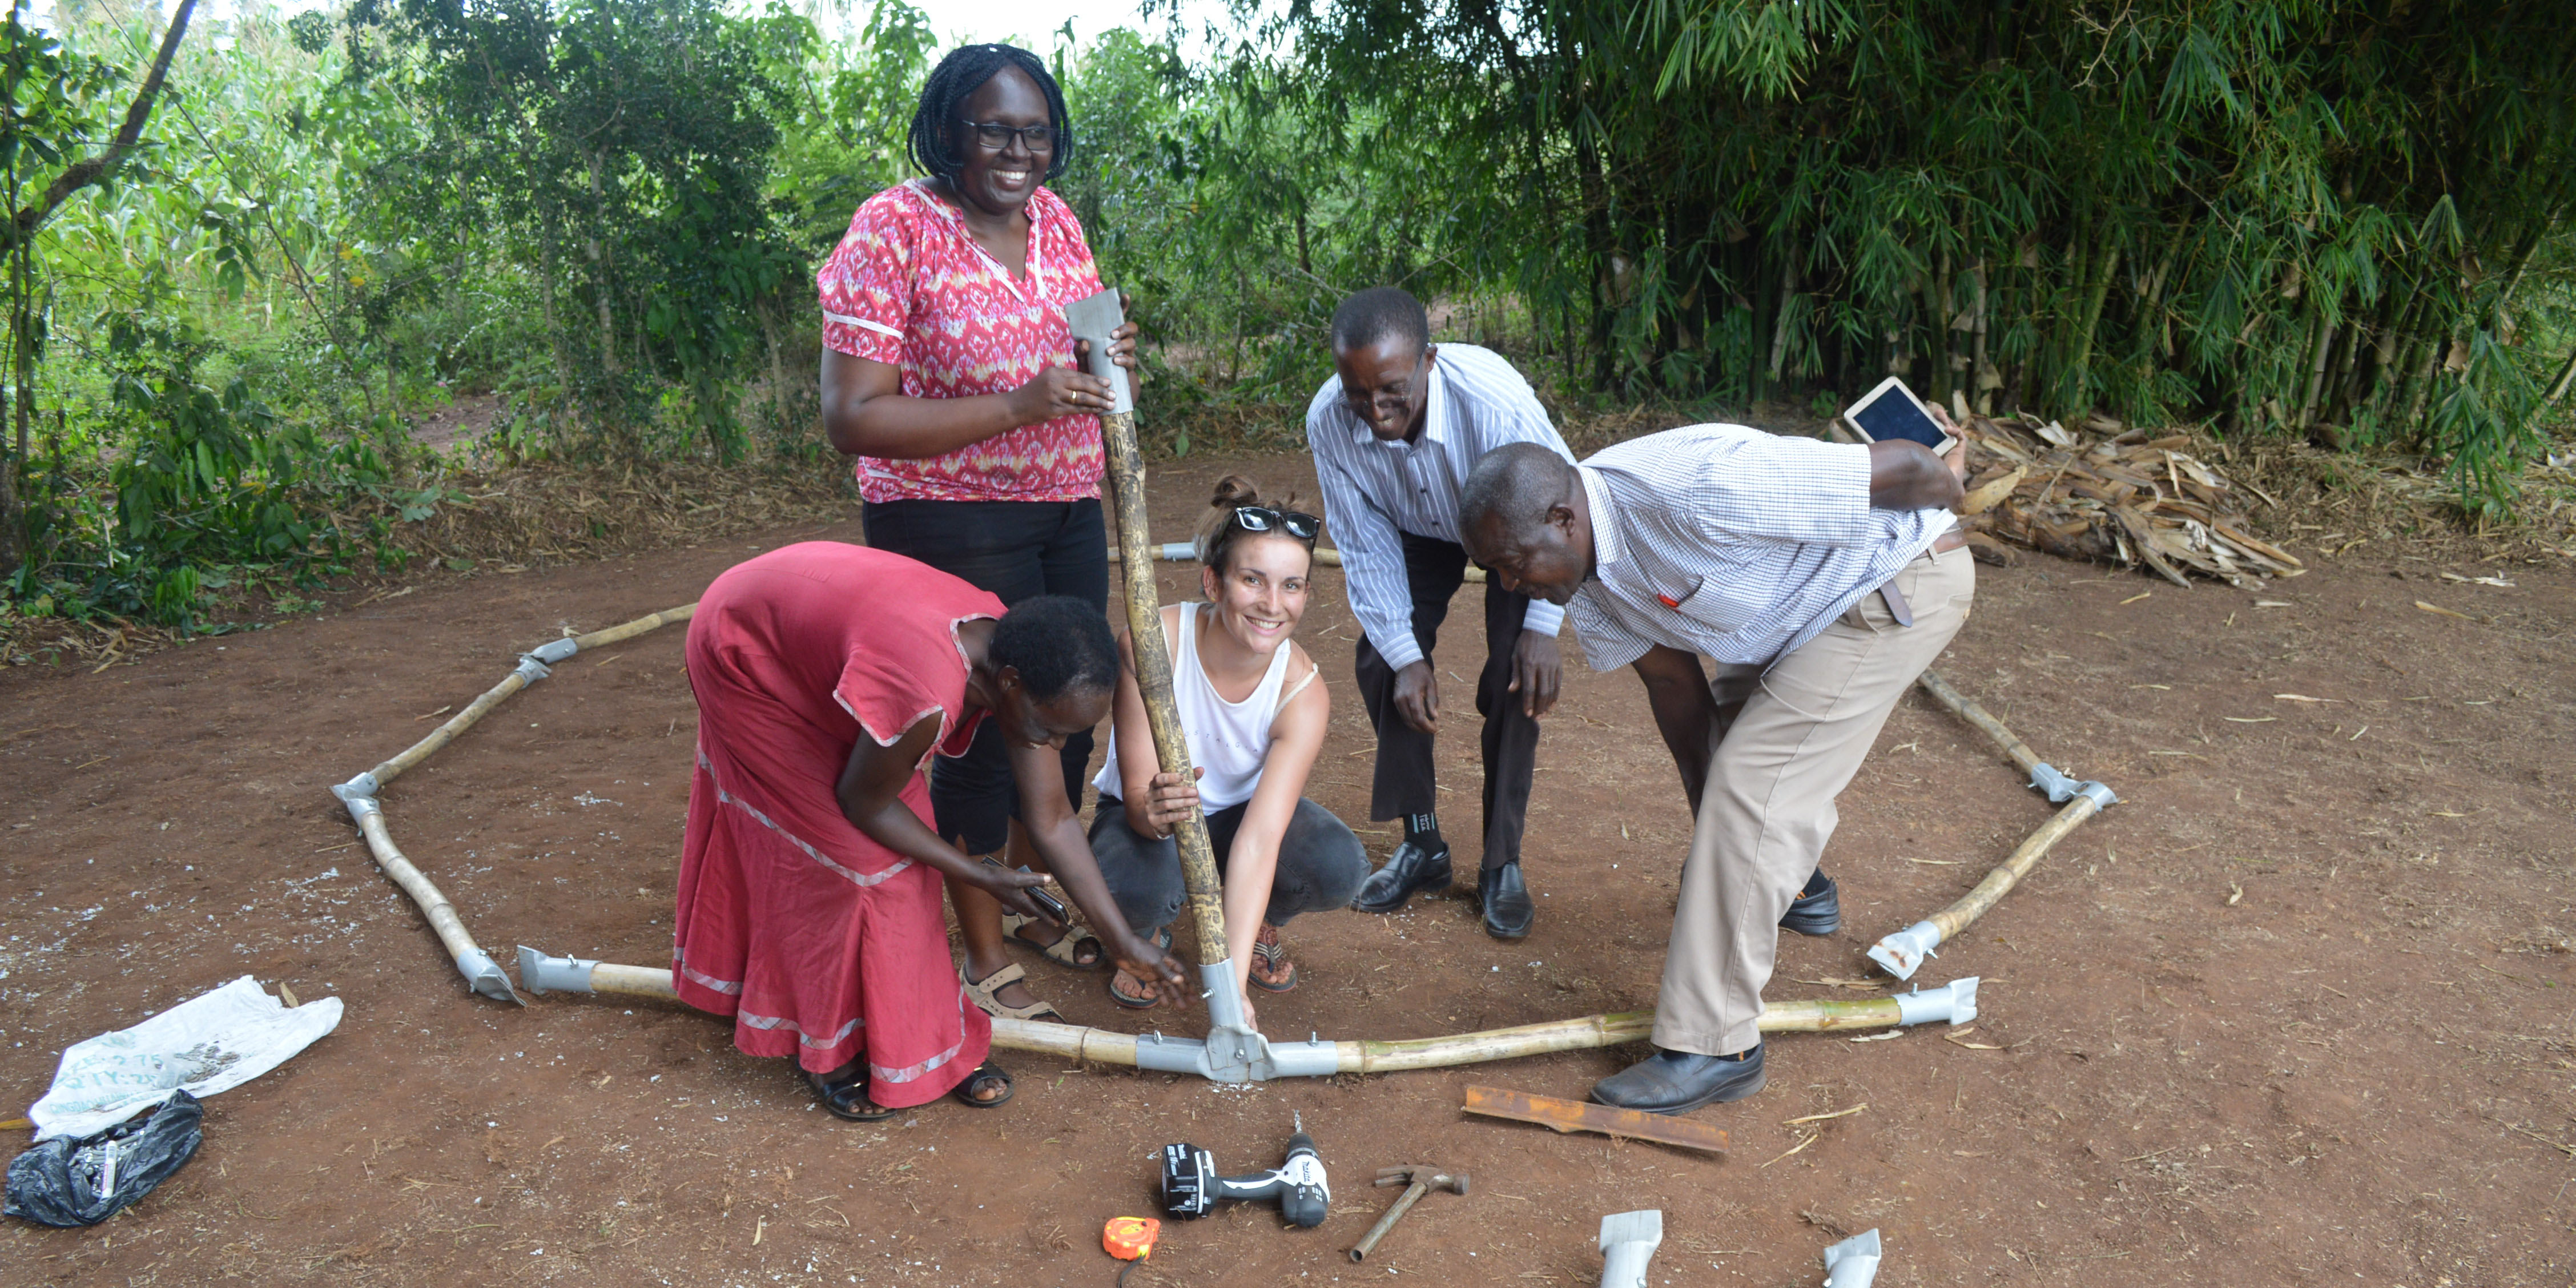 Reisen bedeutet Neues finden - Abenteuer Auslandssemester in Uganda Teil 2 1